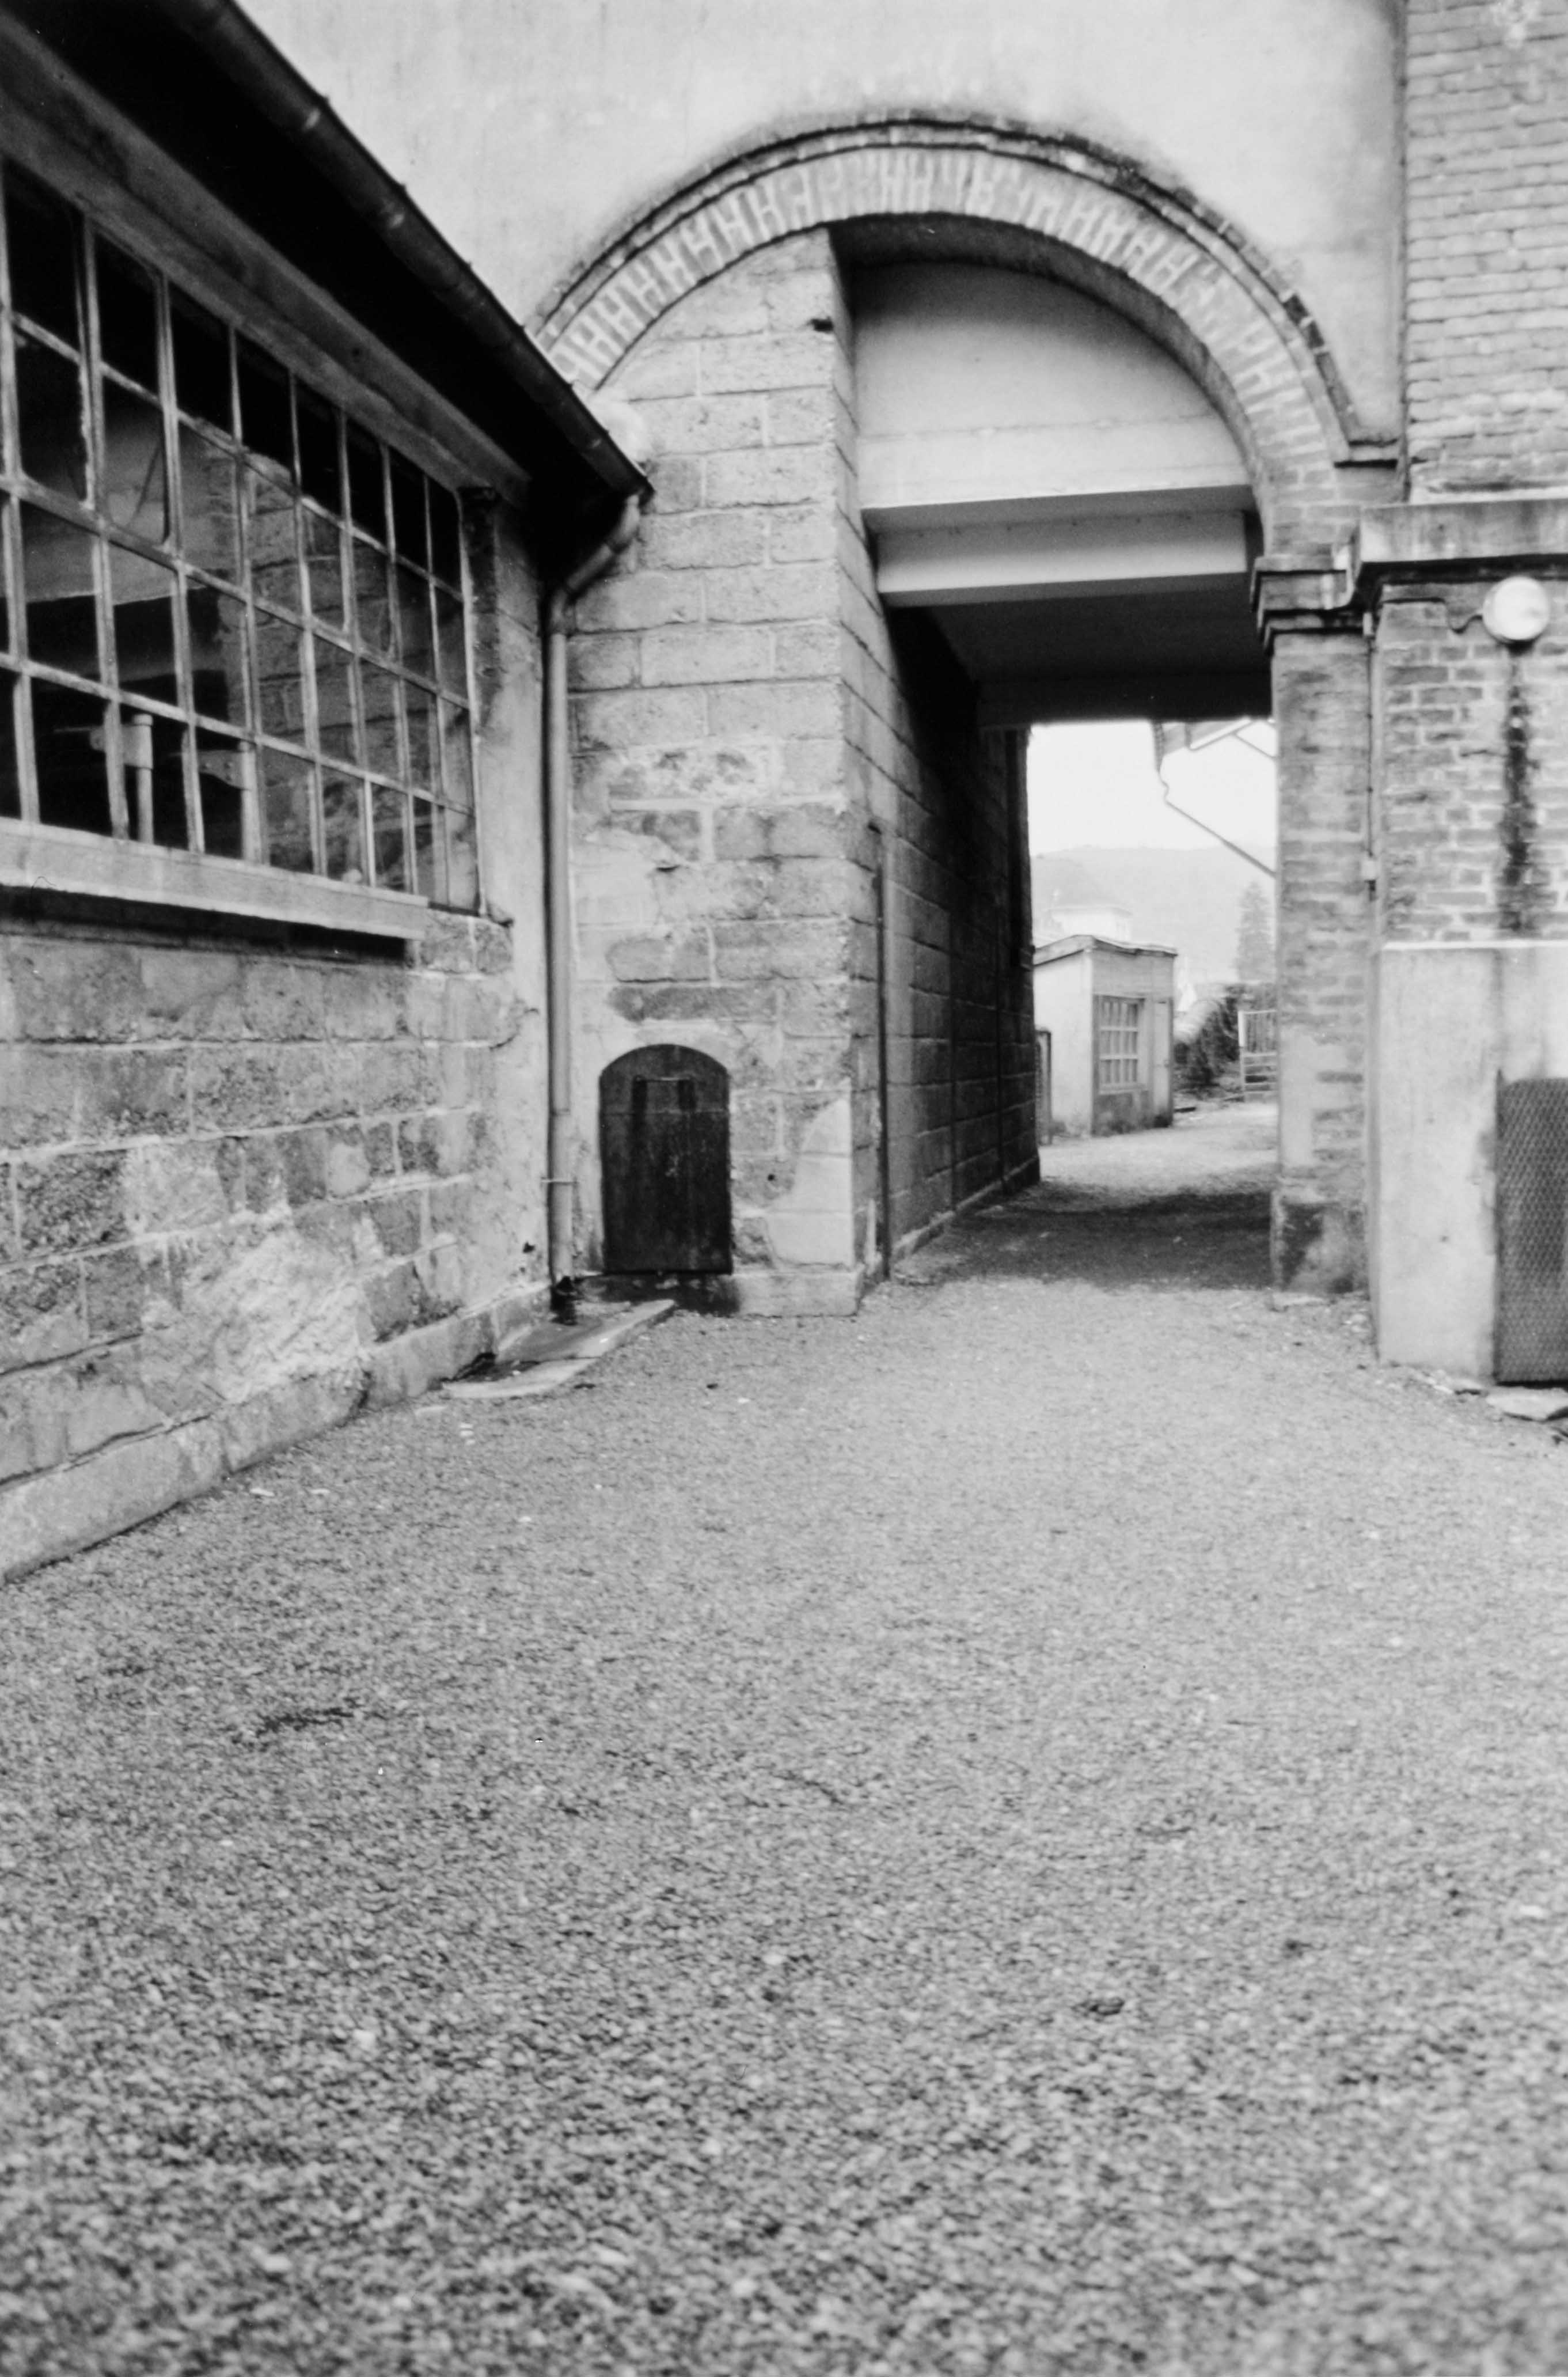 Le passage couvert menant de la teinturerie à l'arrière du bâtiment des ateliers de tissage. Il est orné d'un arc plein-cintre en briques à extrados brisé (reportage photographique de L. Yeghicheyan, 1992, Aubusson, Musée départemental de la Tapisserie)